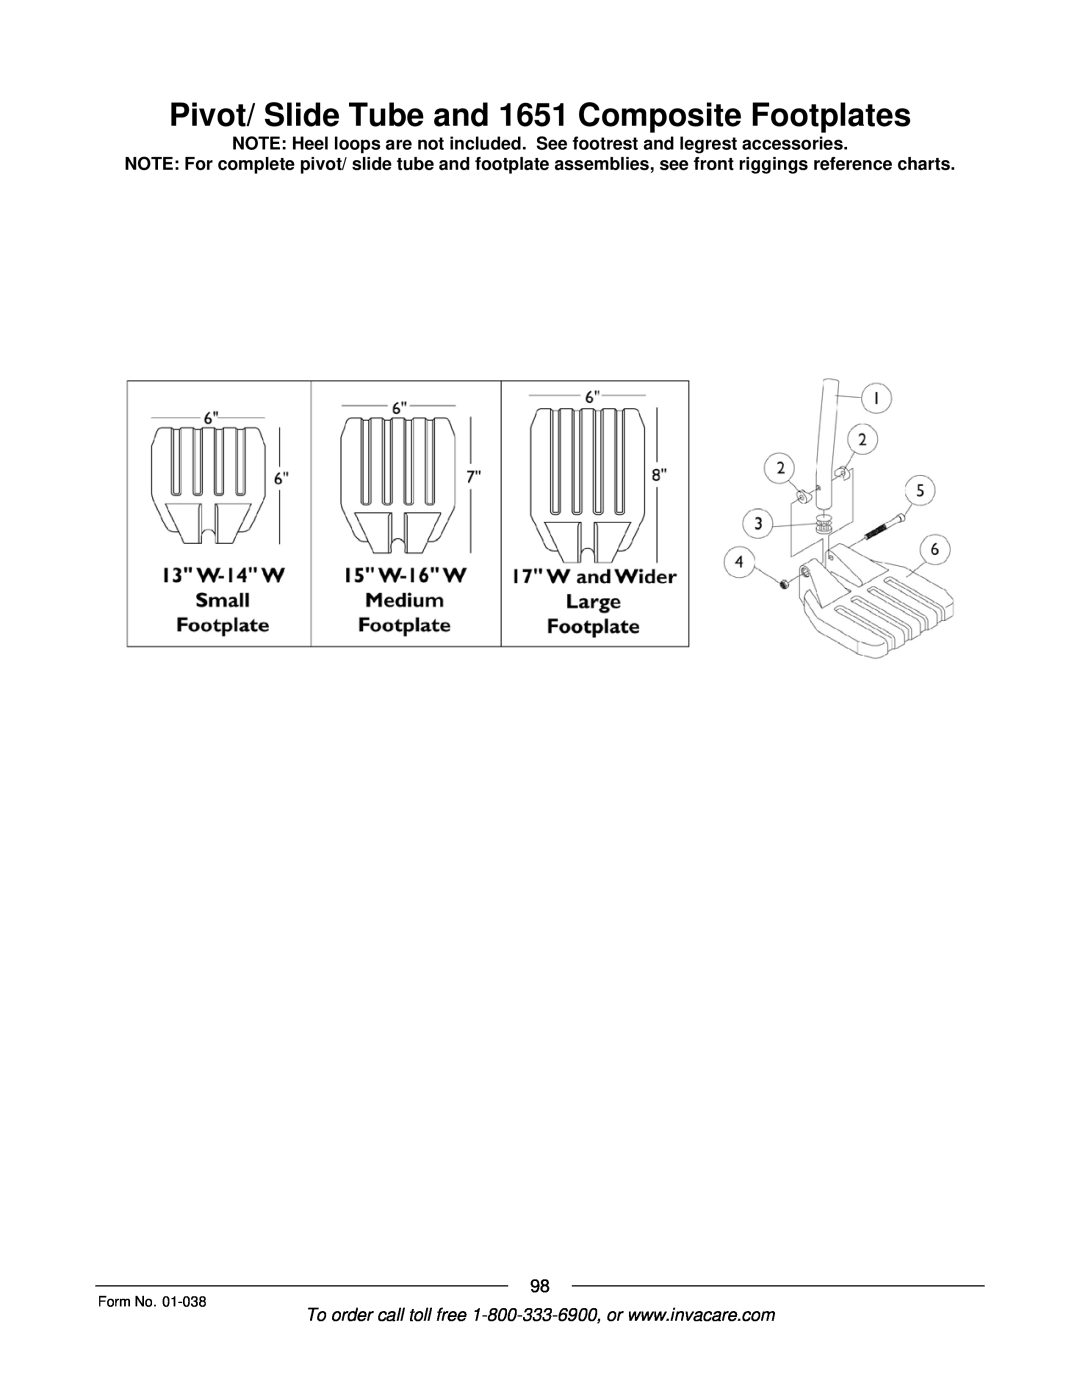 Invacare ESS-PTO, PTO-STM manual Pivot/ Slide Tube and 1651 Composite Footplates, Form No 